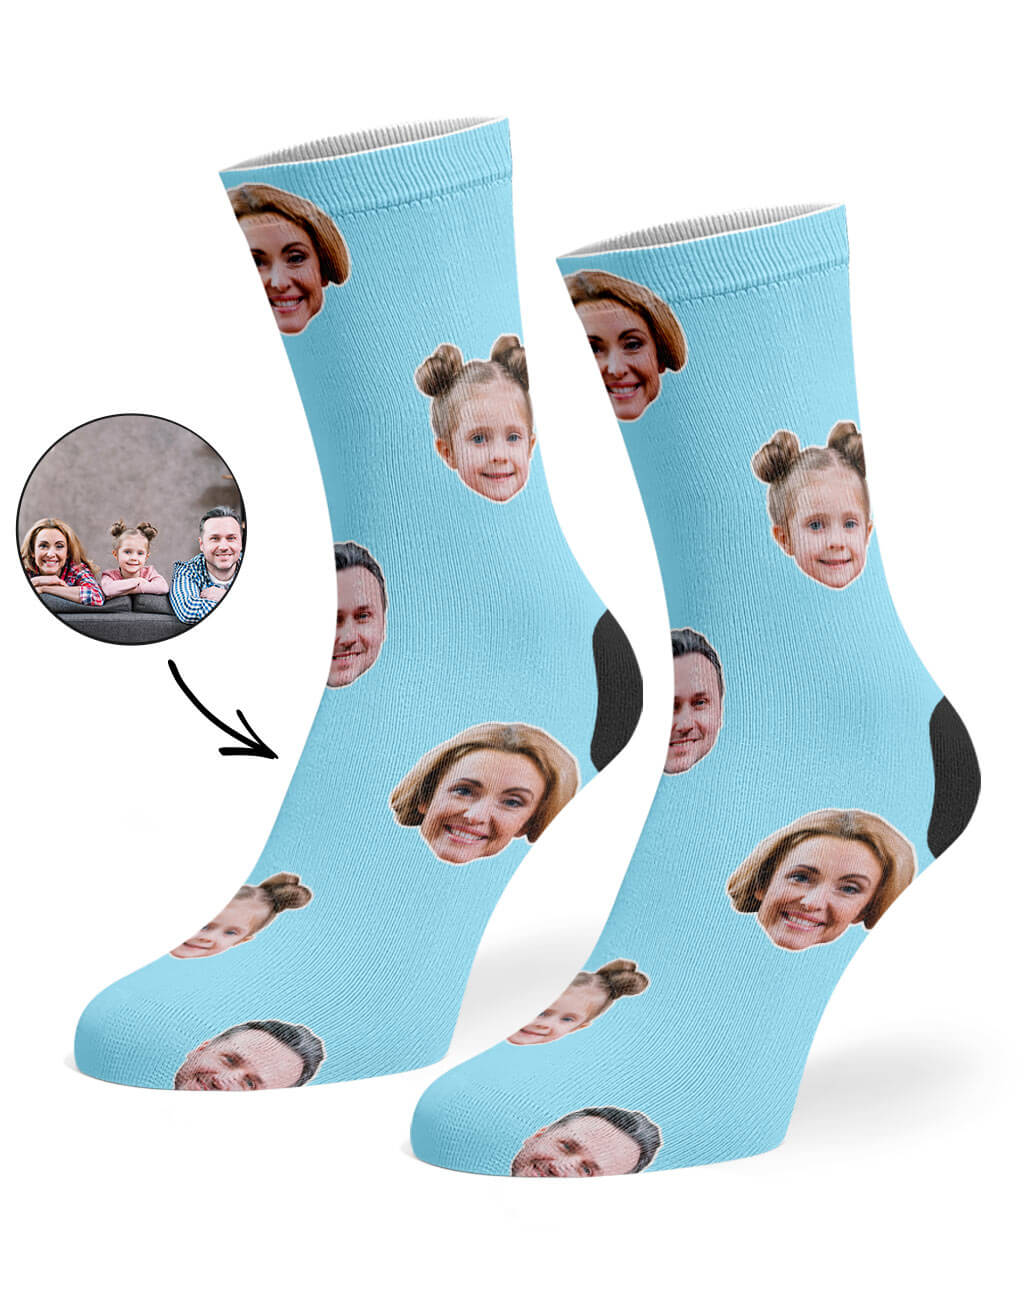 custom socks for your family